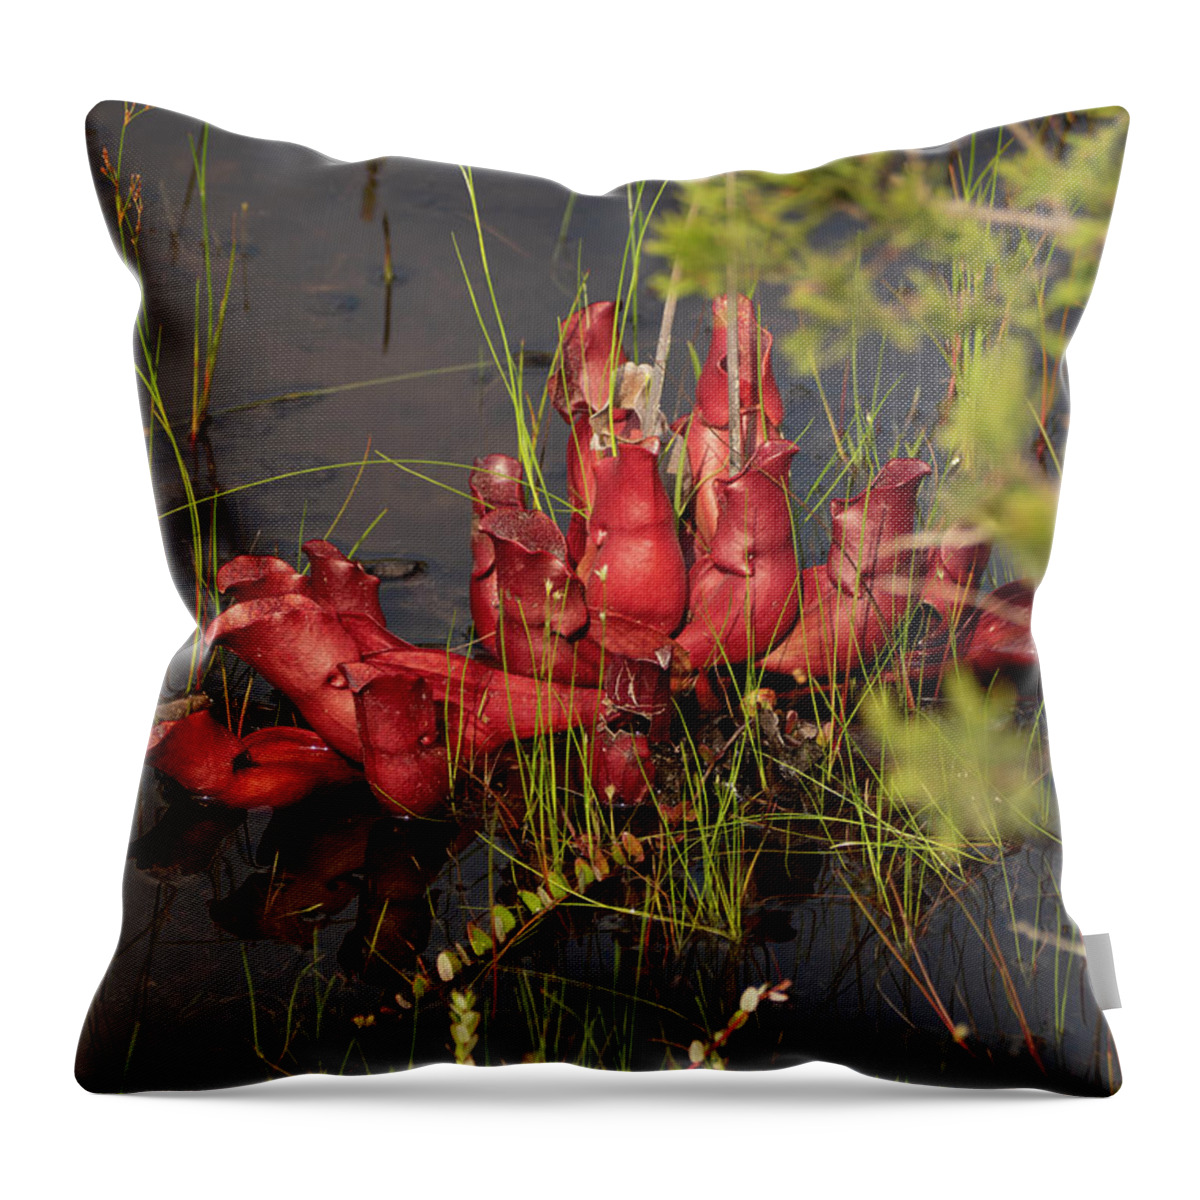 Nature Throw Pillow featuring the photograph Sarracenia Bug Bat Plant by Louis Dallara